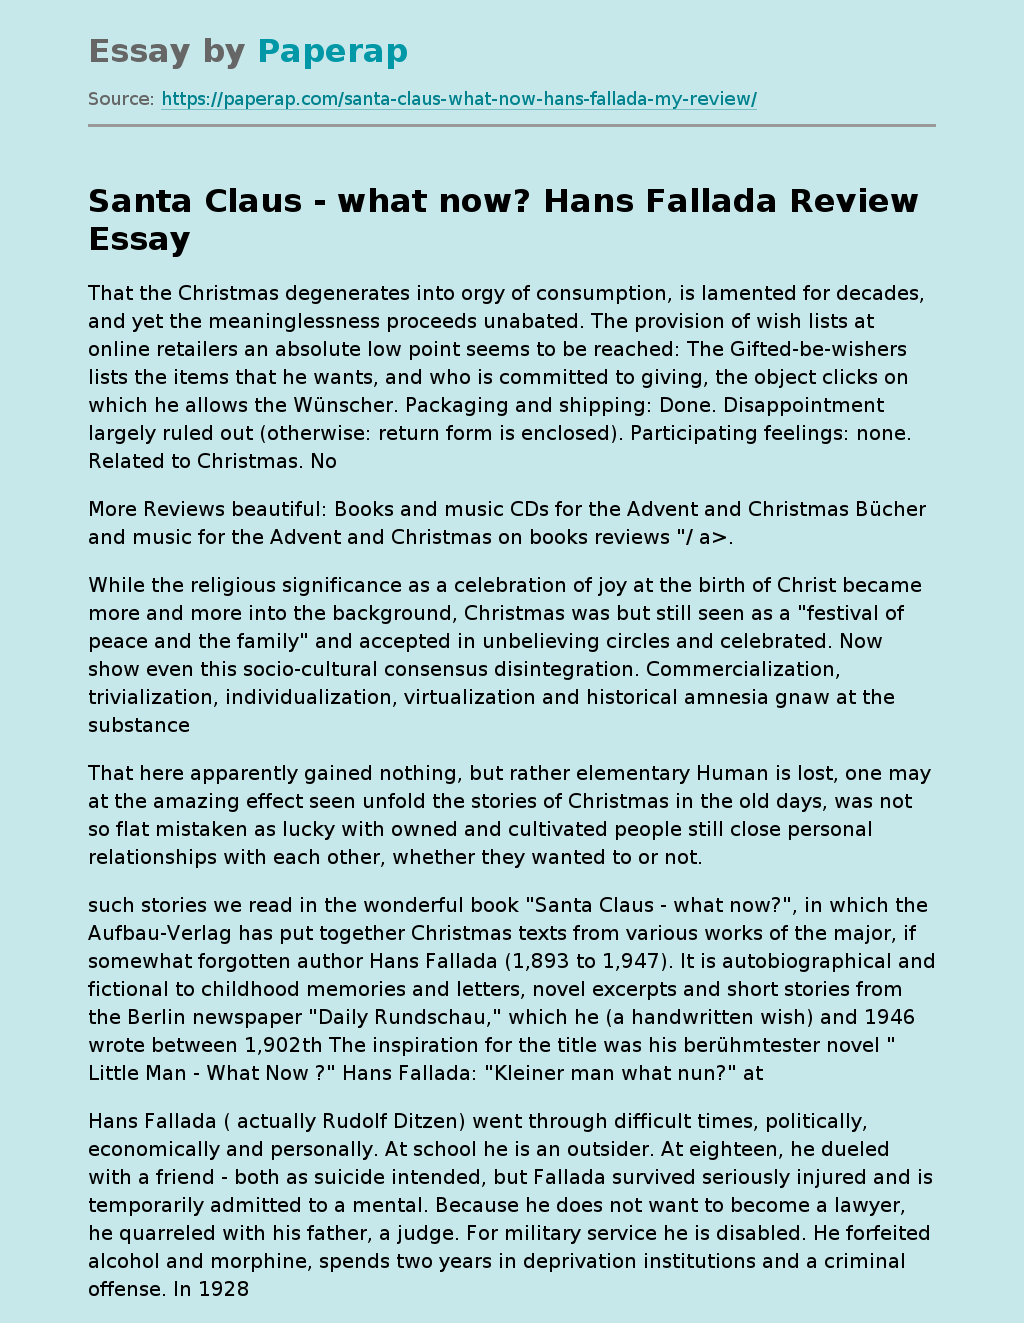 "Santa Claus - What Now?" By Hans Fallada